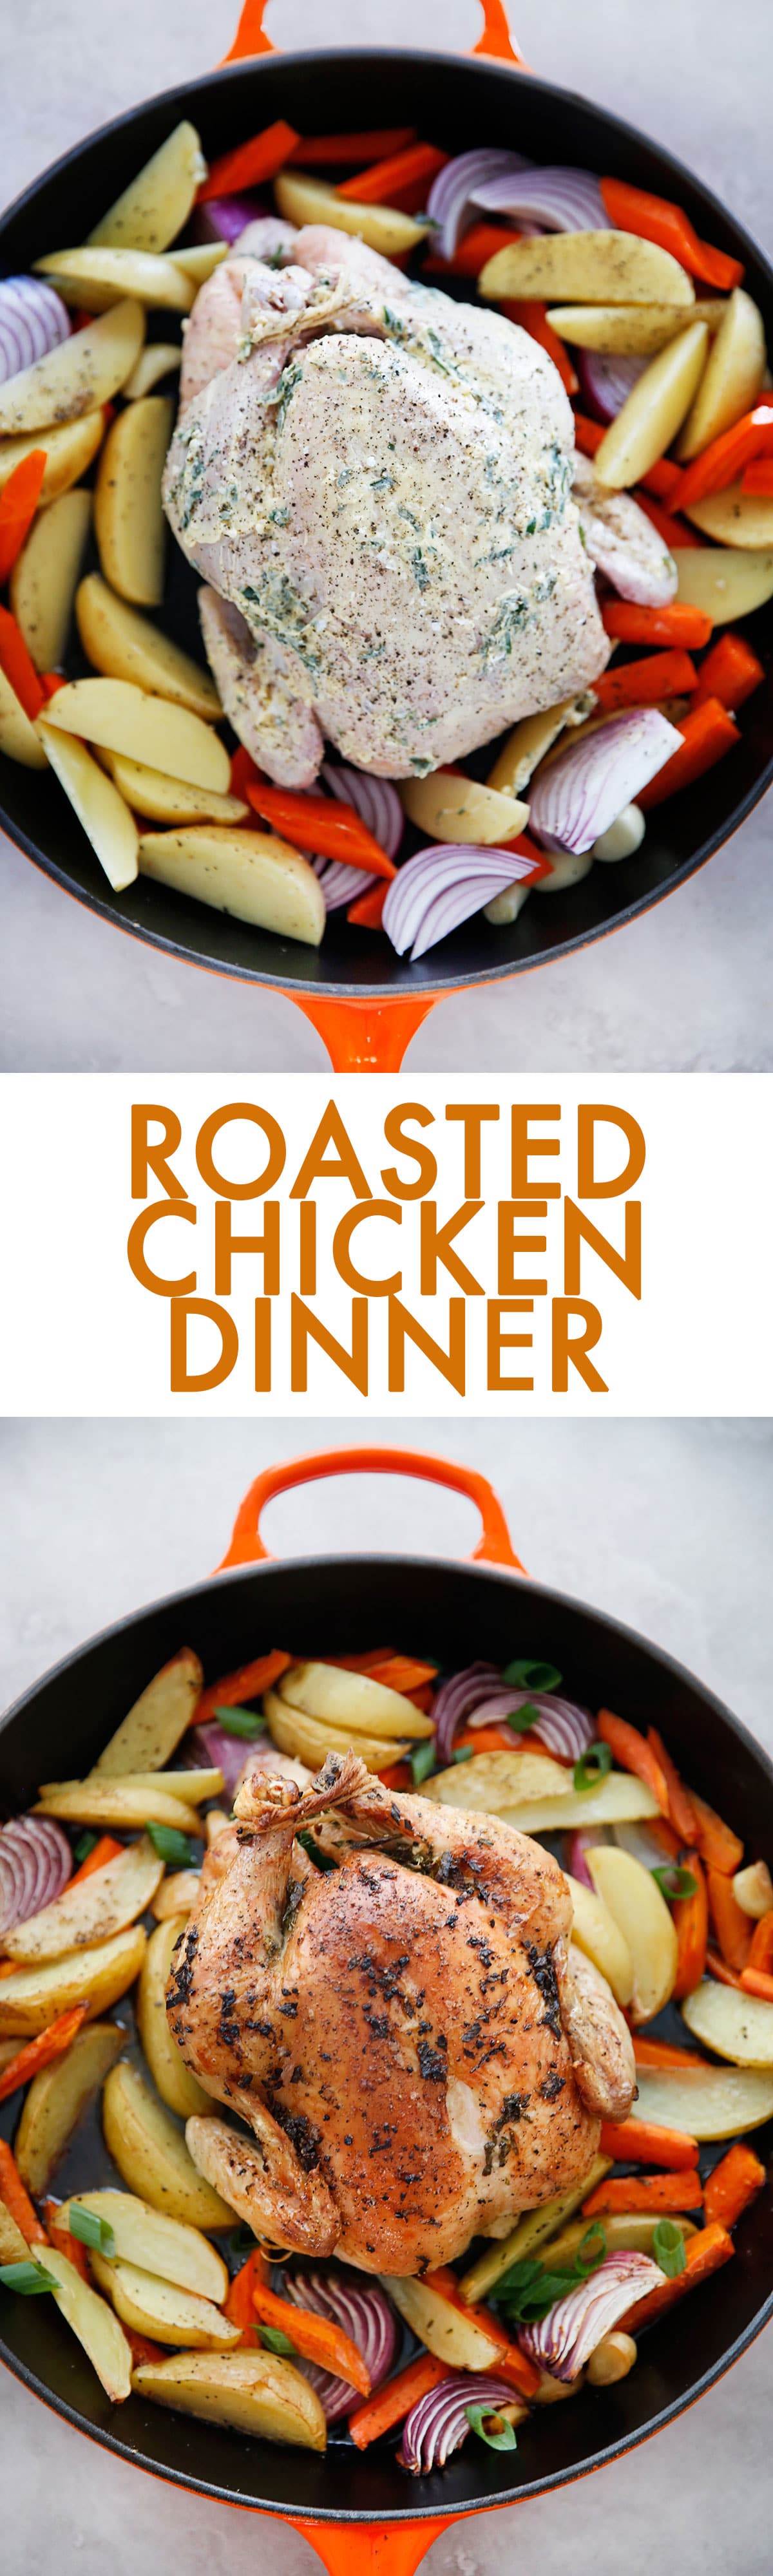 roasted chicken dinner (so easy!!!!)